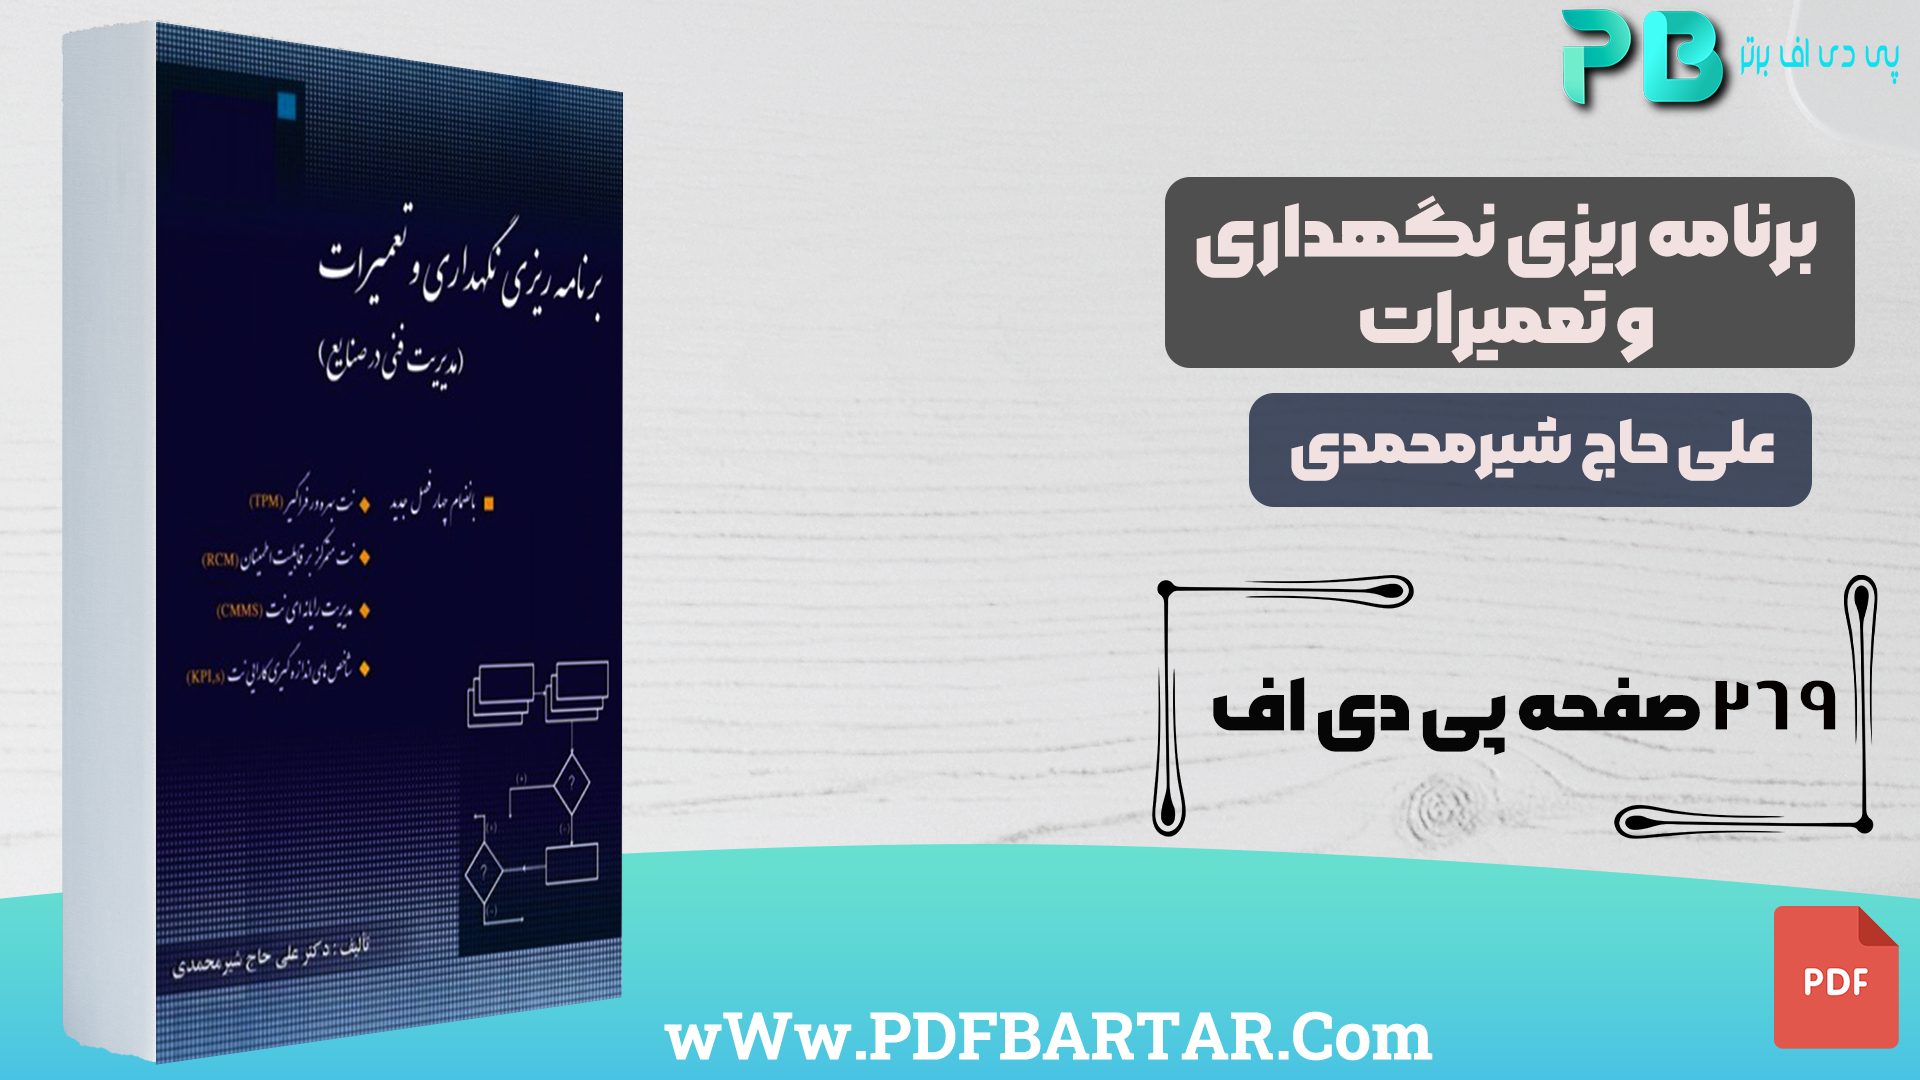 دانلود پی دی اف کتاب برنامه ریزی نگهداری و تعمیرات علی حاج شیر محمدی PDF - پی دی اف برتر